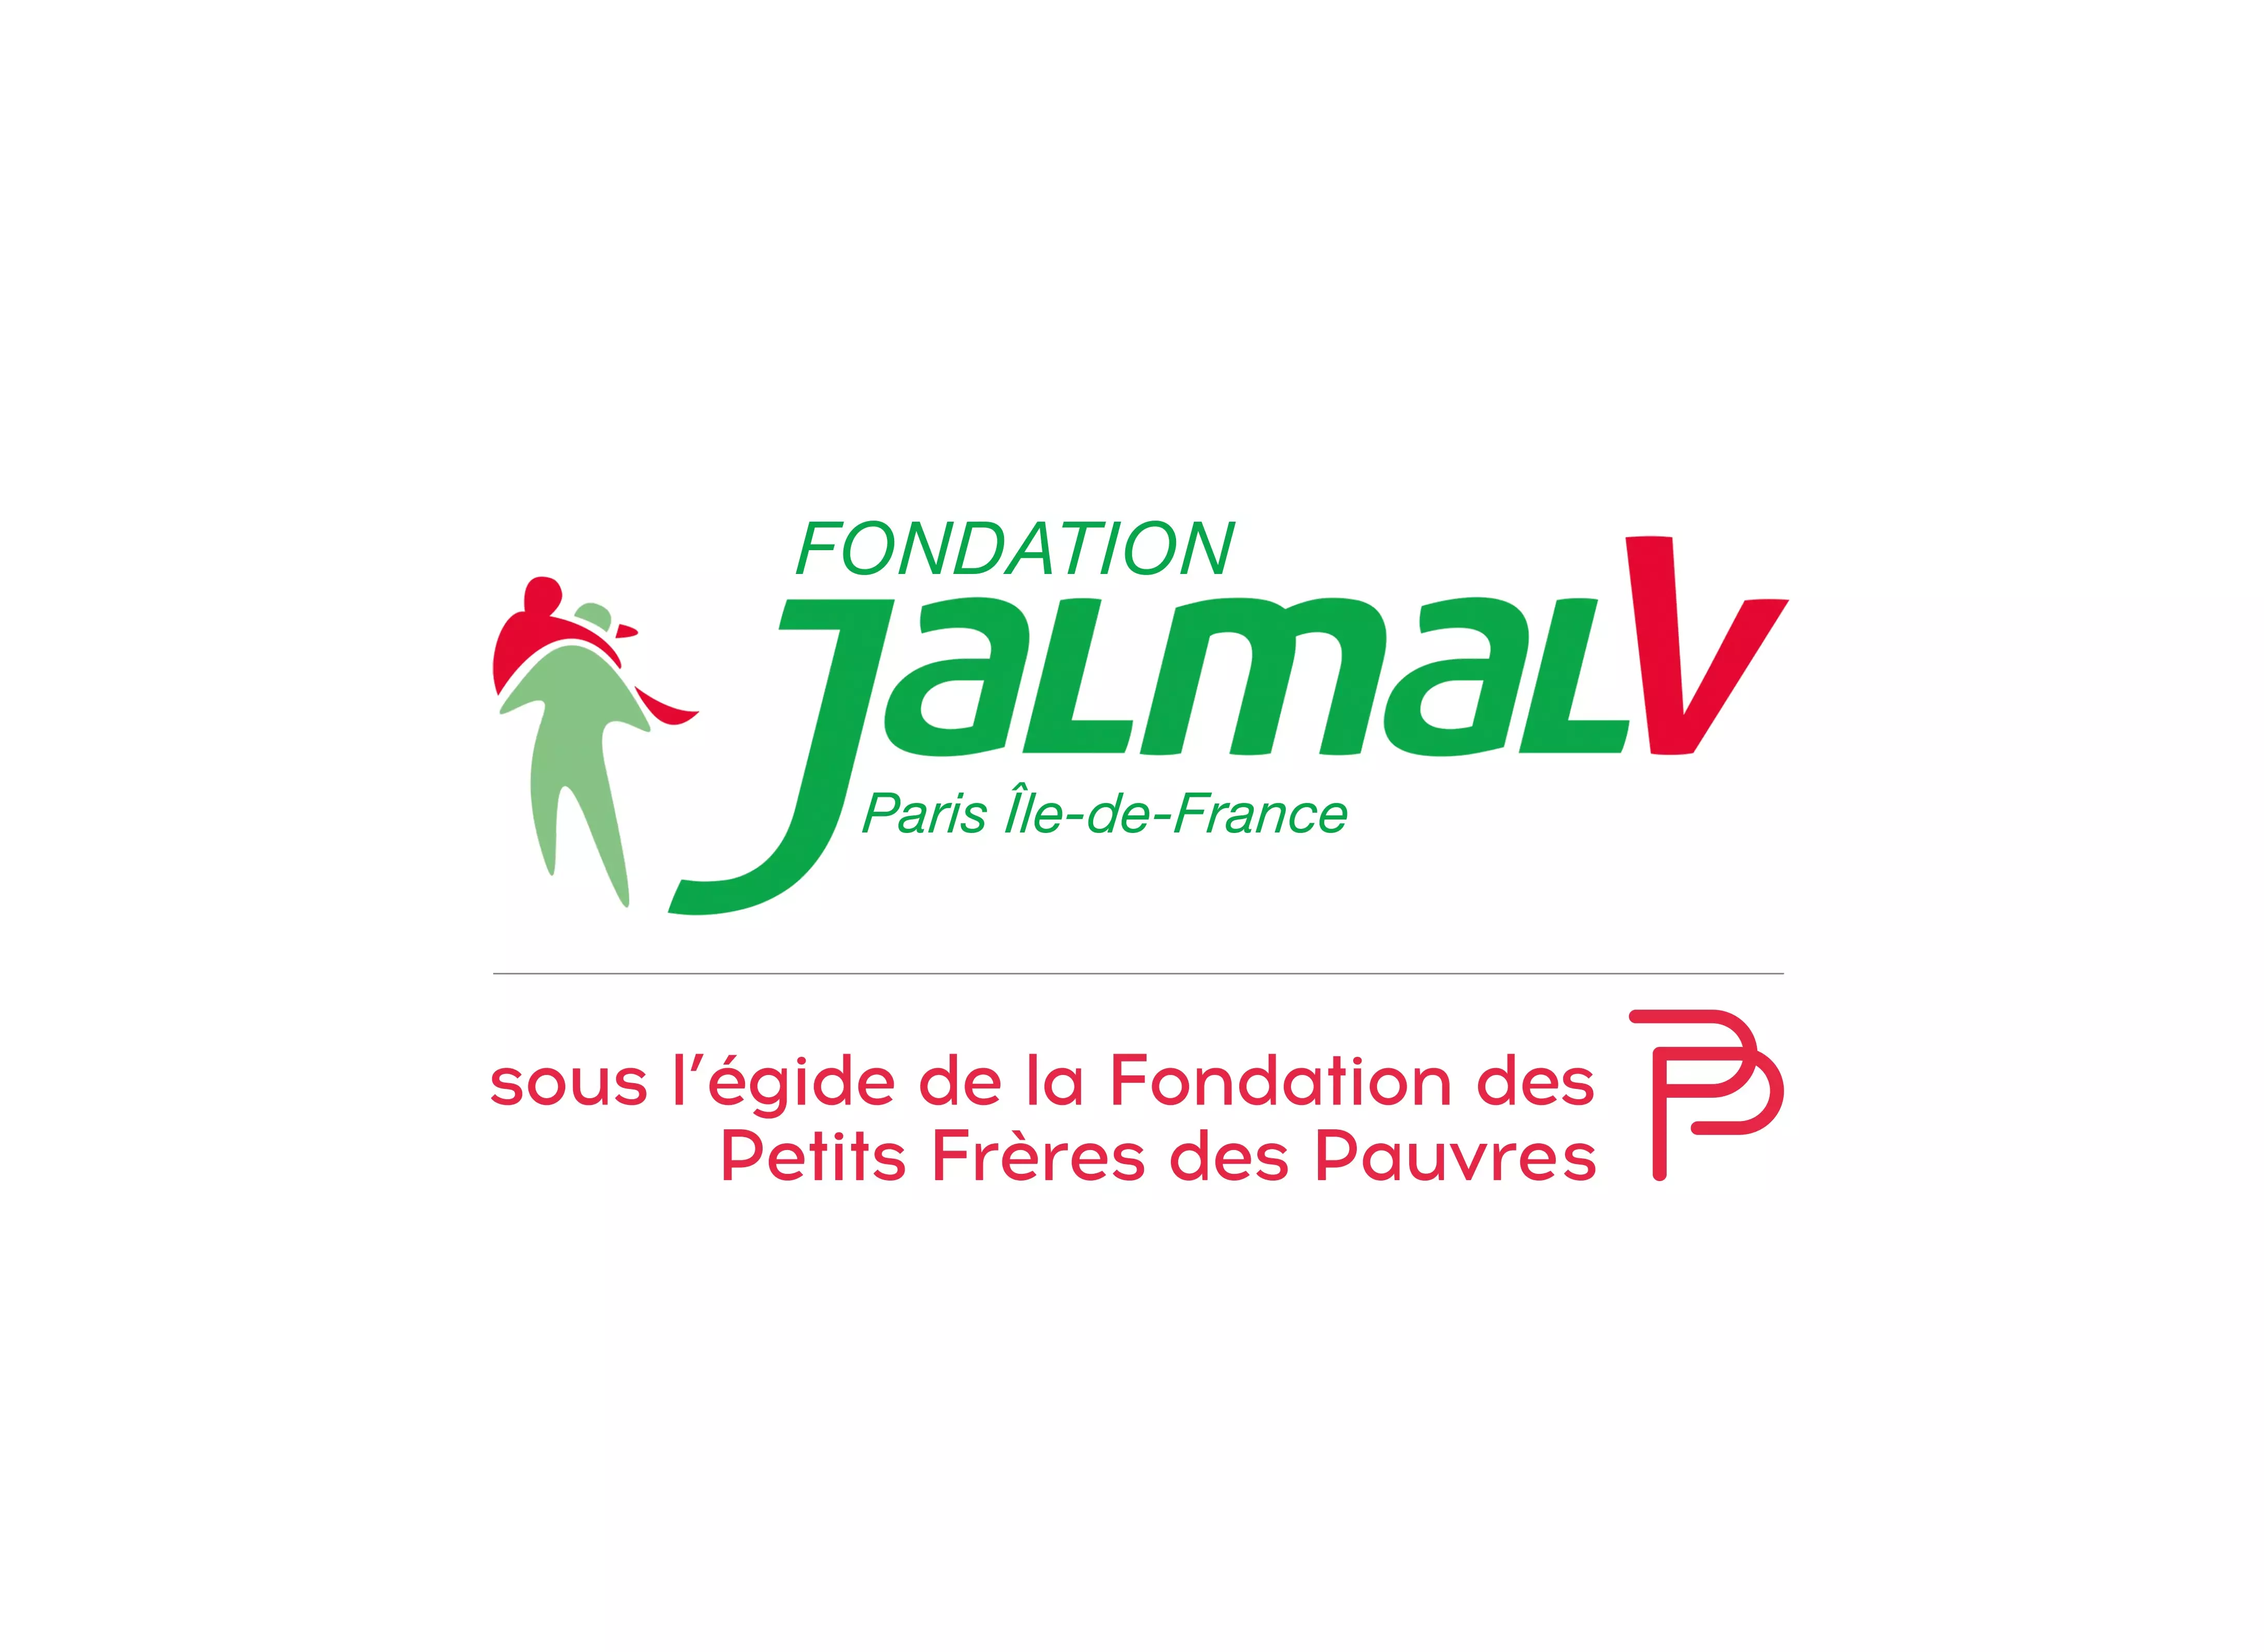 La Fondation JALMALV Paris – Île-de-France 